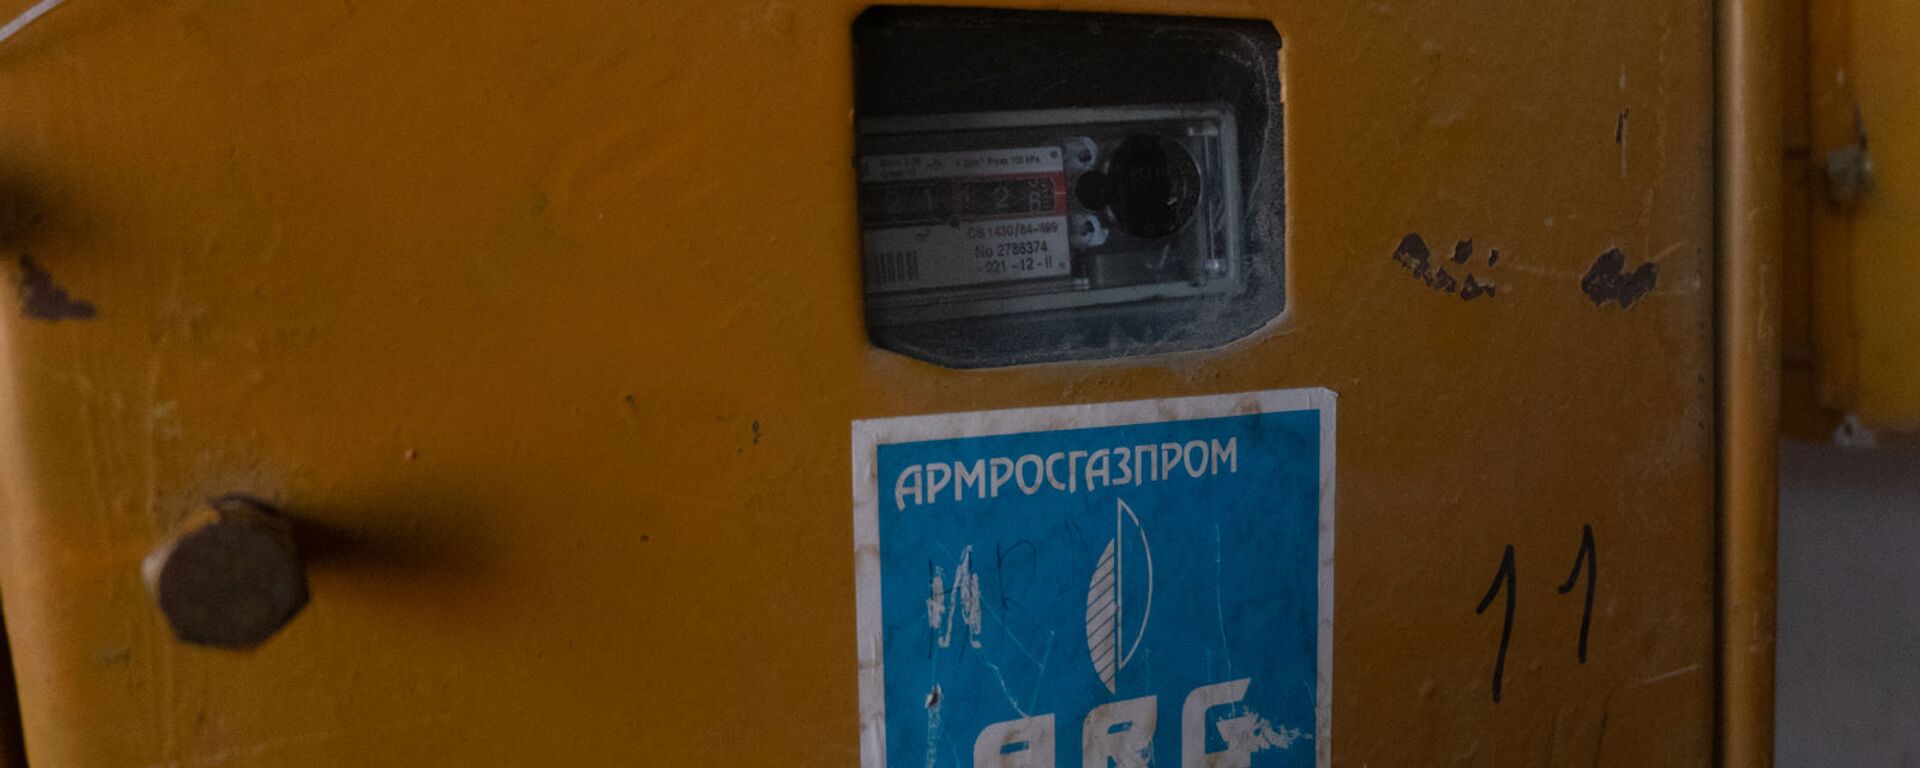 Счетчик газа с номером квартиры погибшей от угарного газа семьи - Sputnik Արմենիա, 1920, 25.05.2021